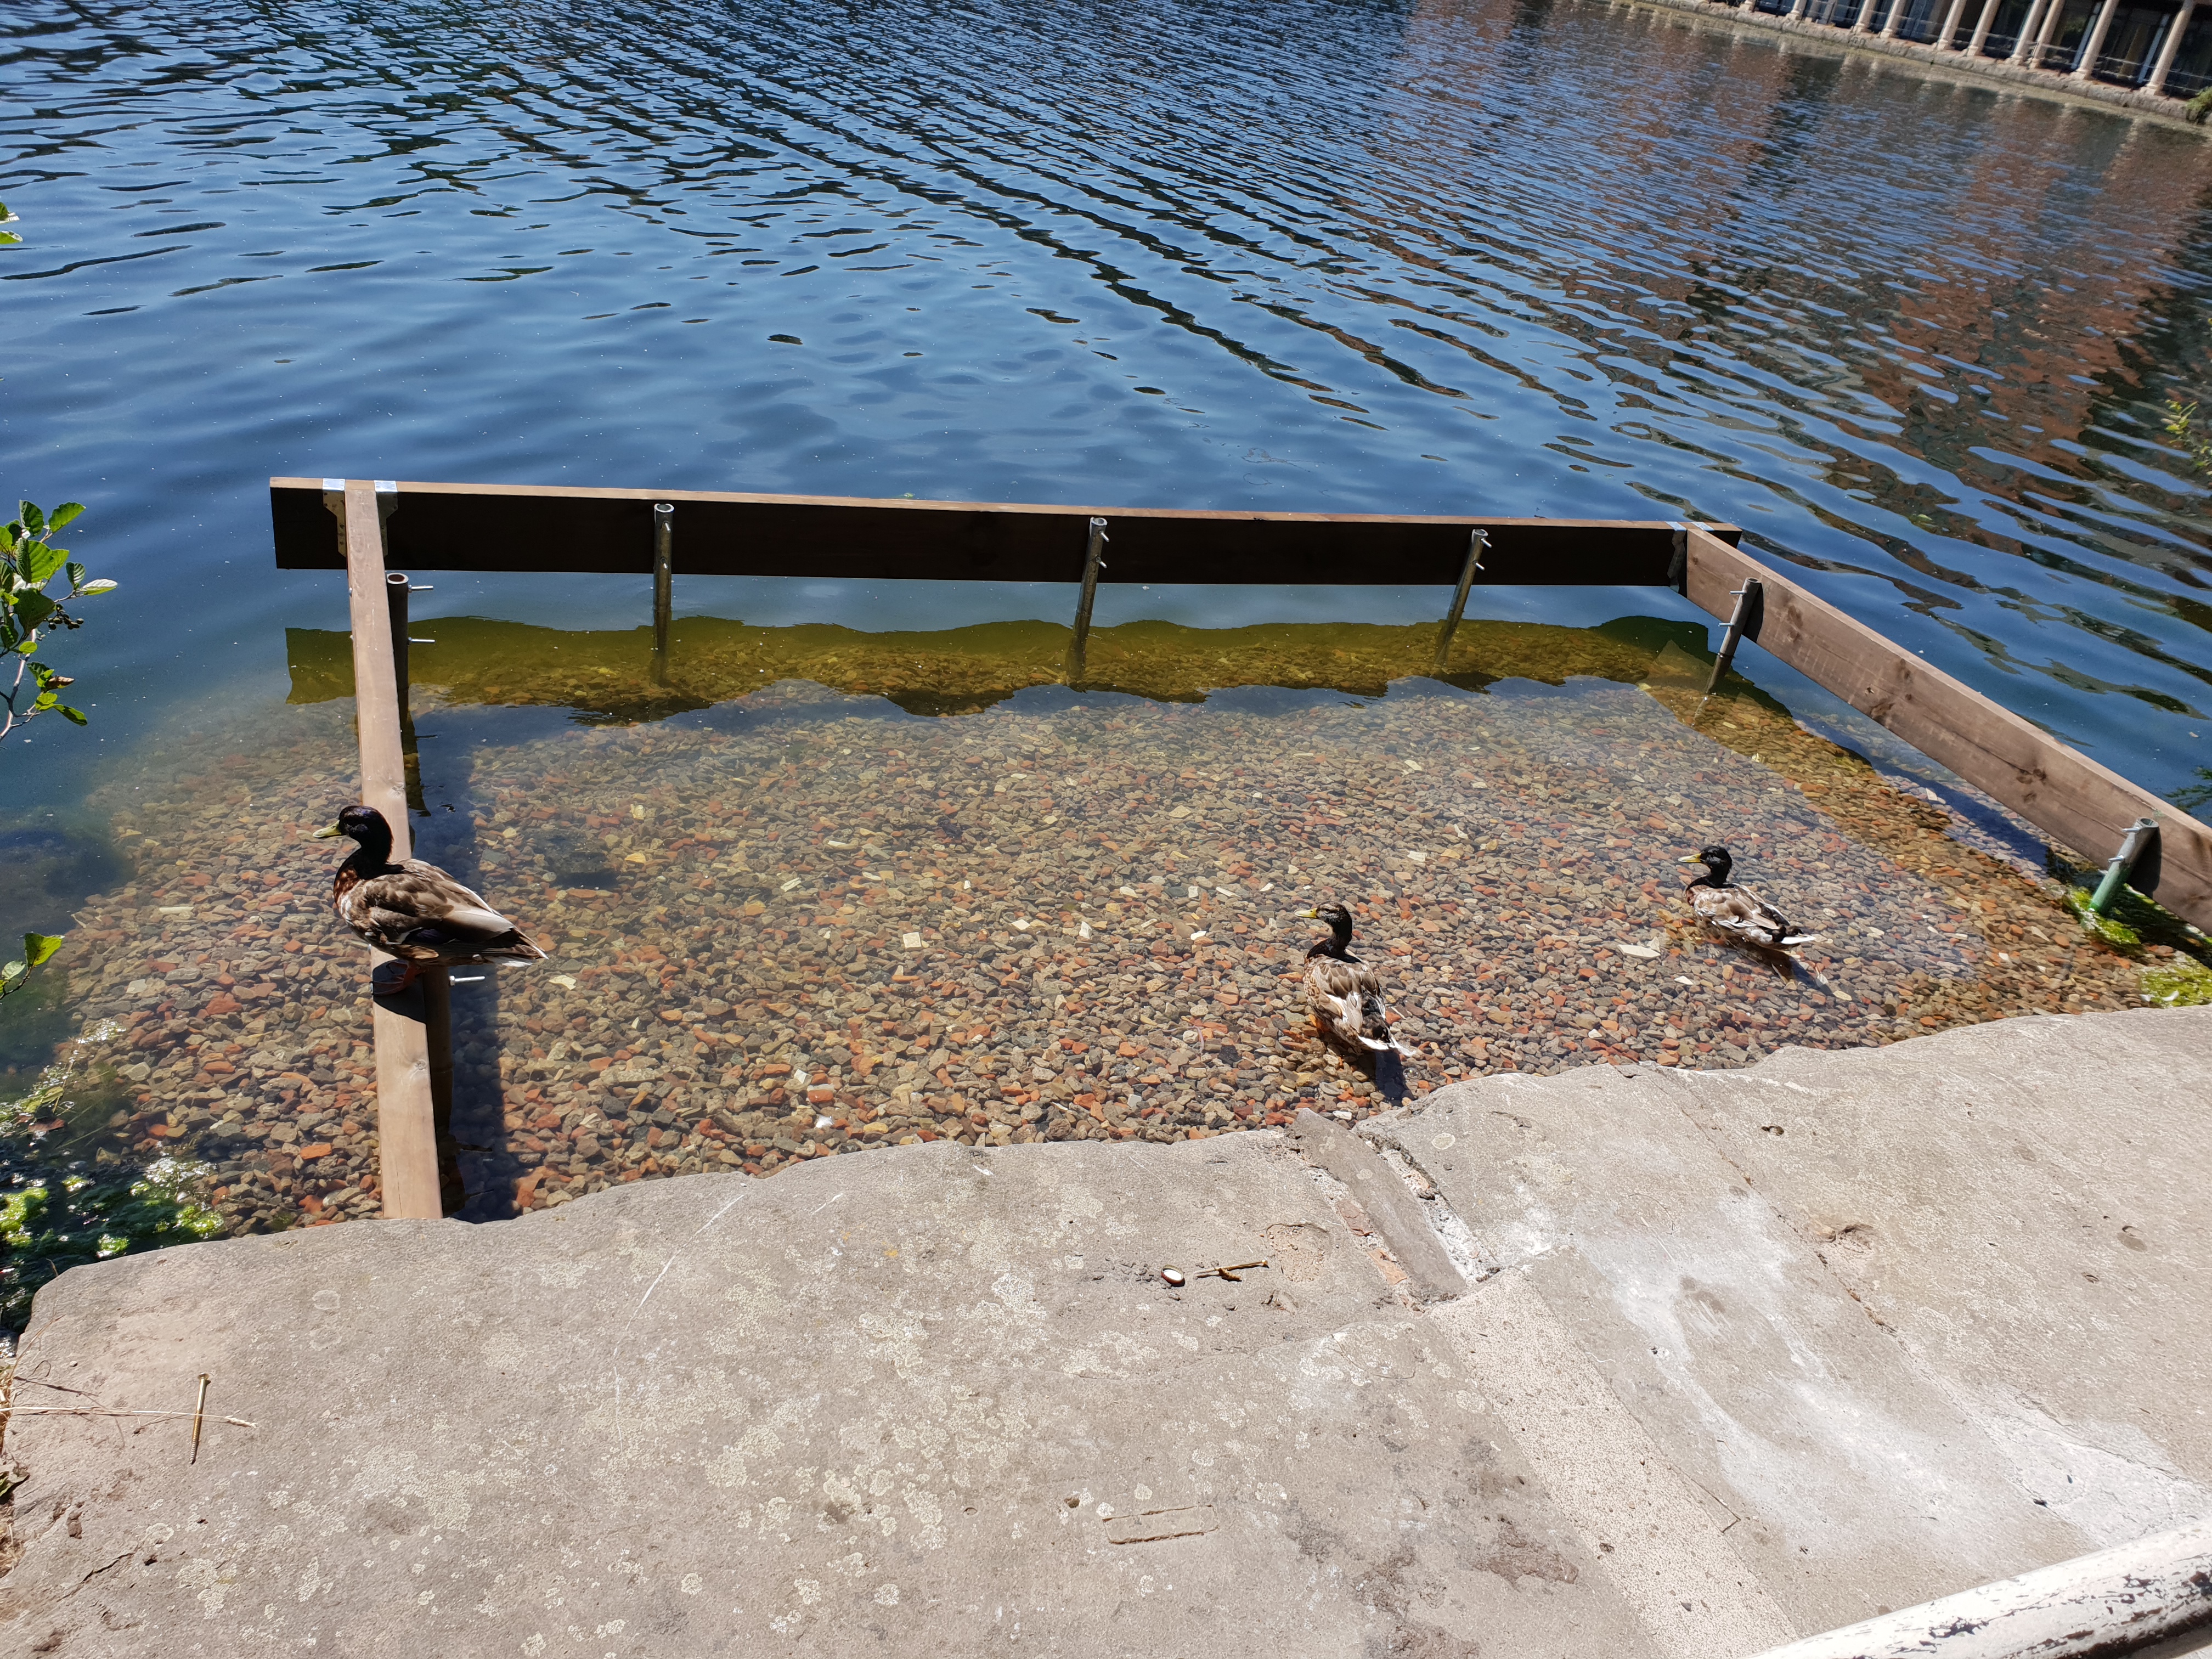 Ducks on pontoon